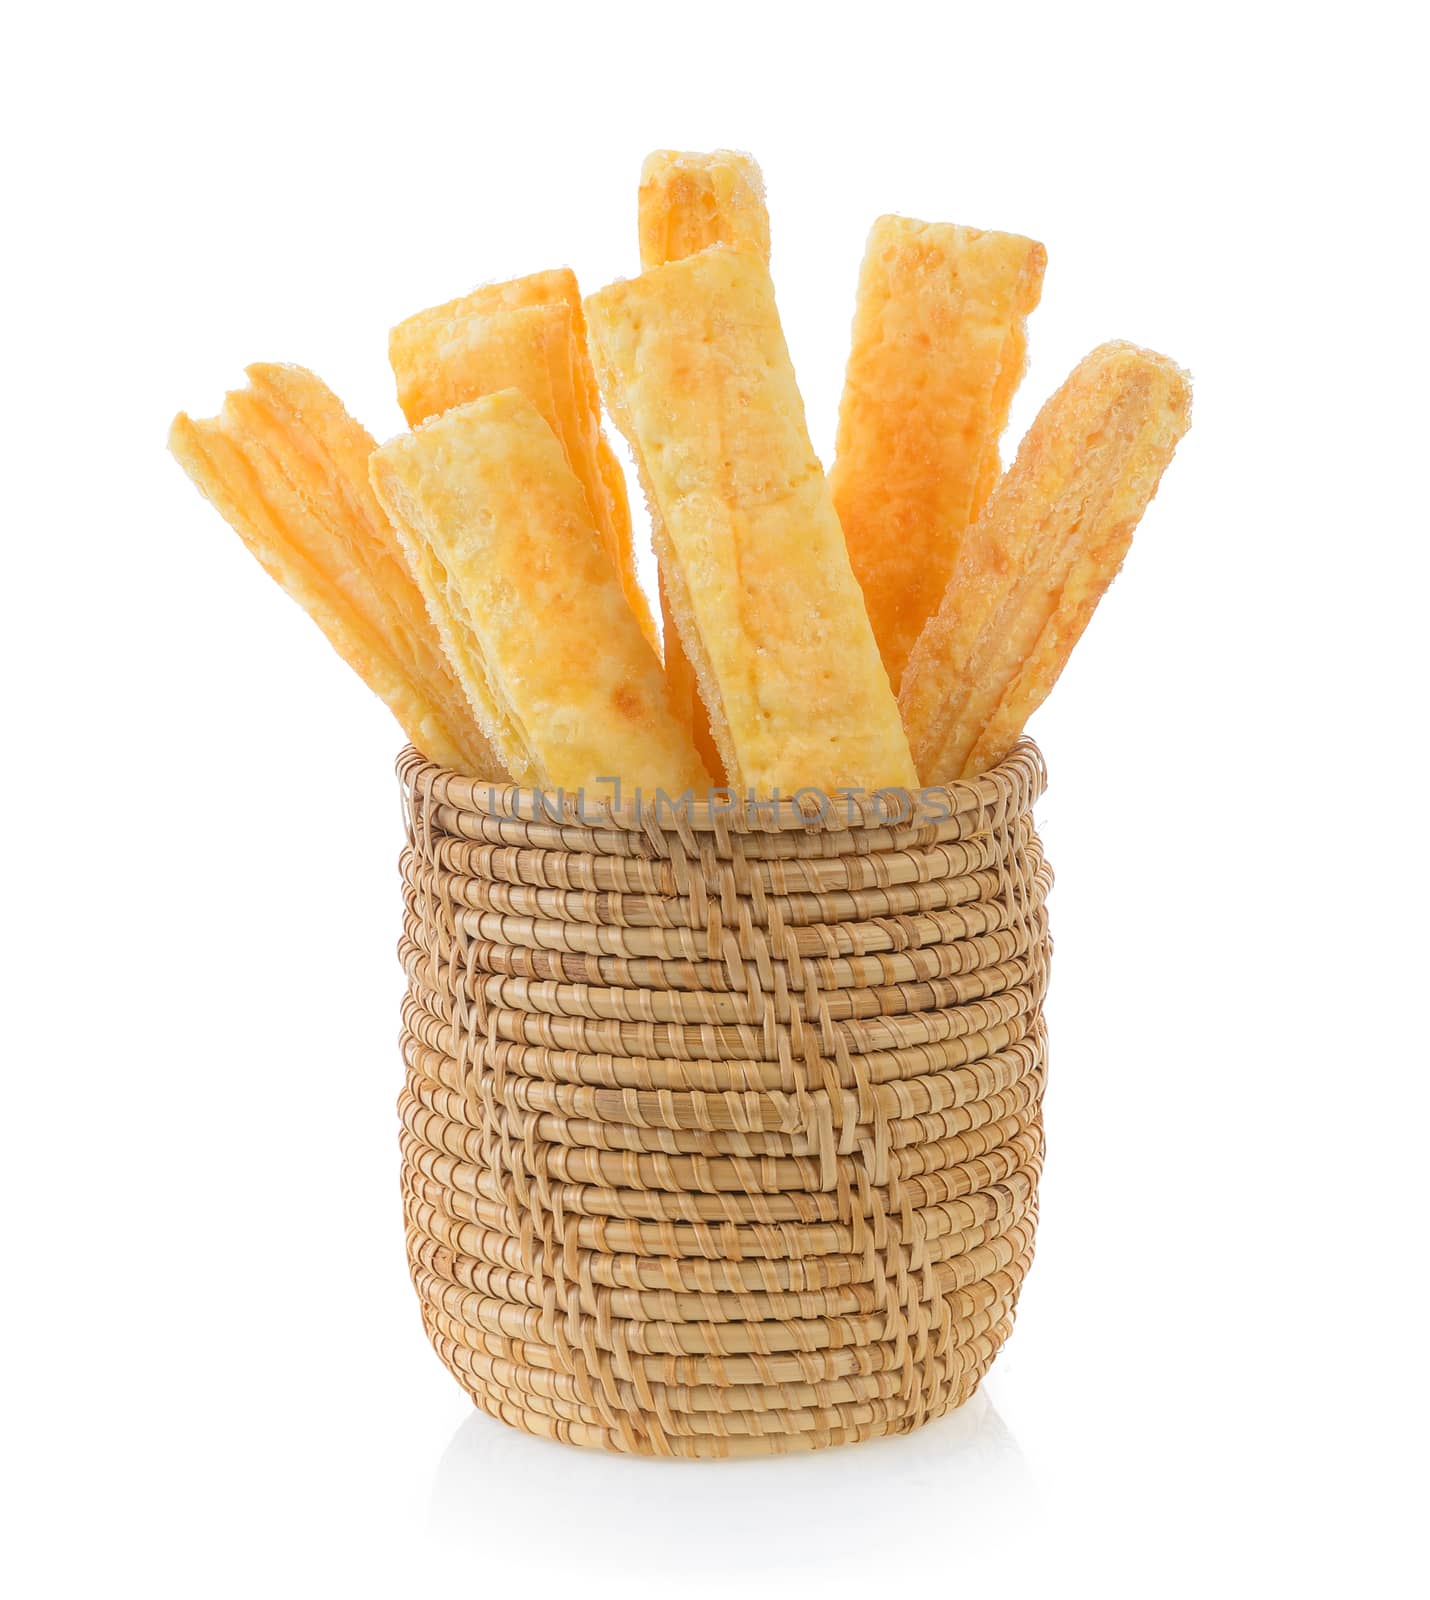 Pie or bread Sticks in basket by sommai